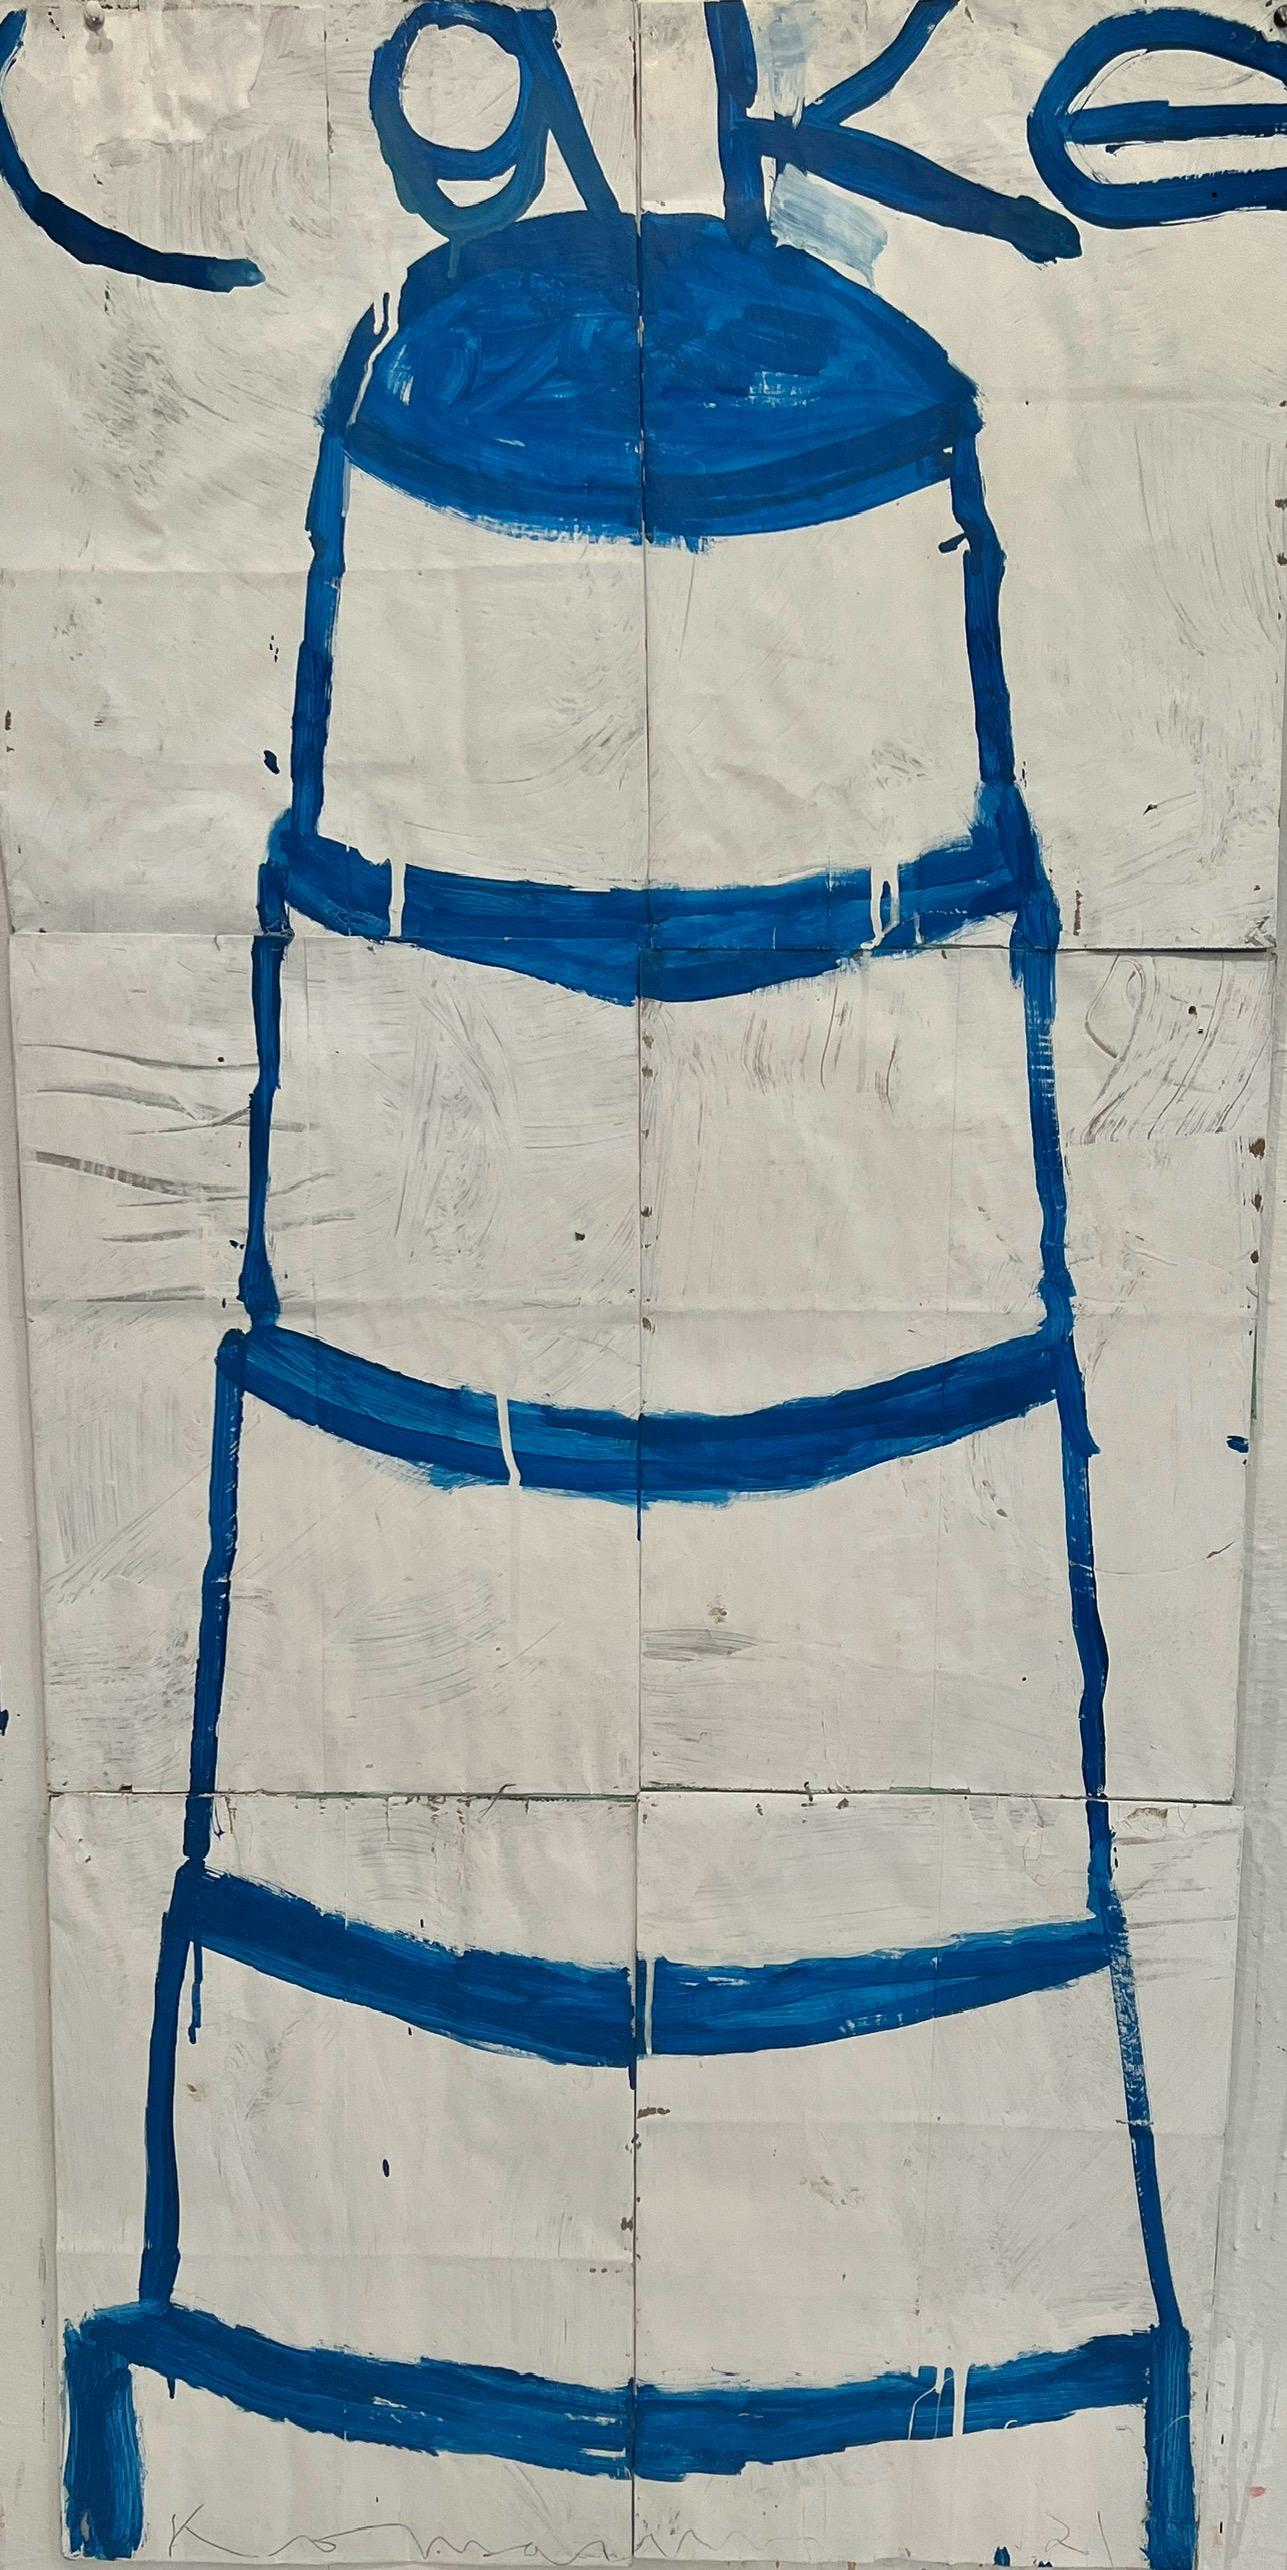 Gary Komarin Still-Life Painting – Stacked Cakes, Blau auf Weiß (5 Schichten)